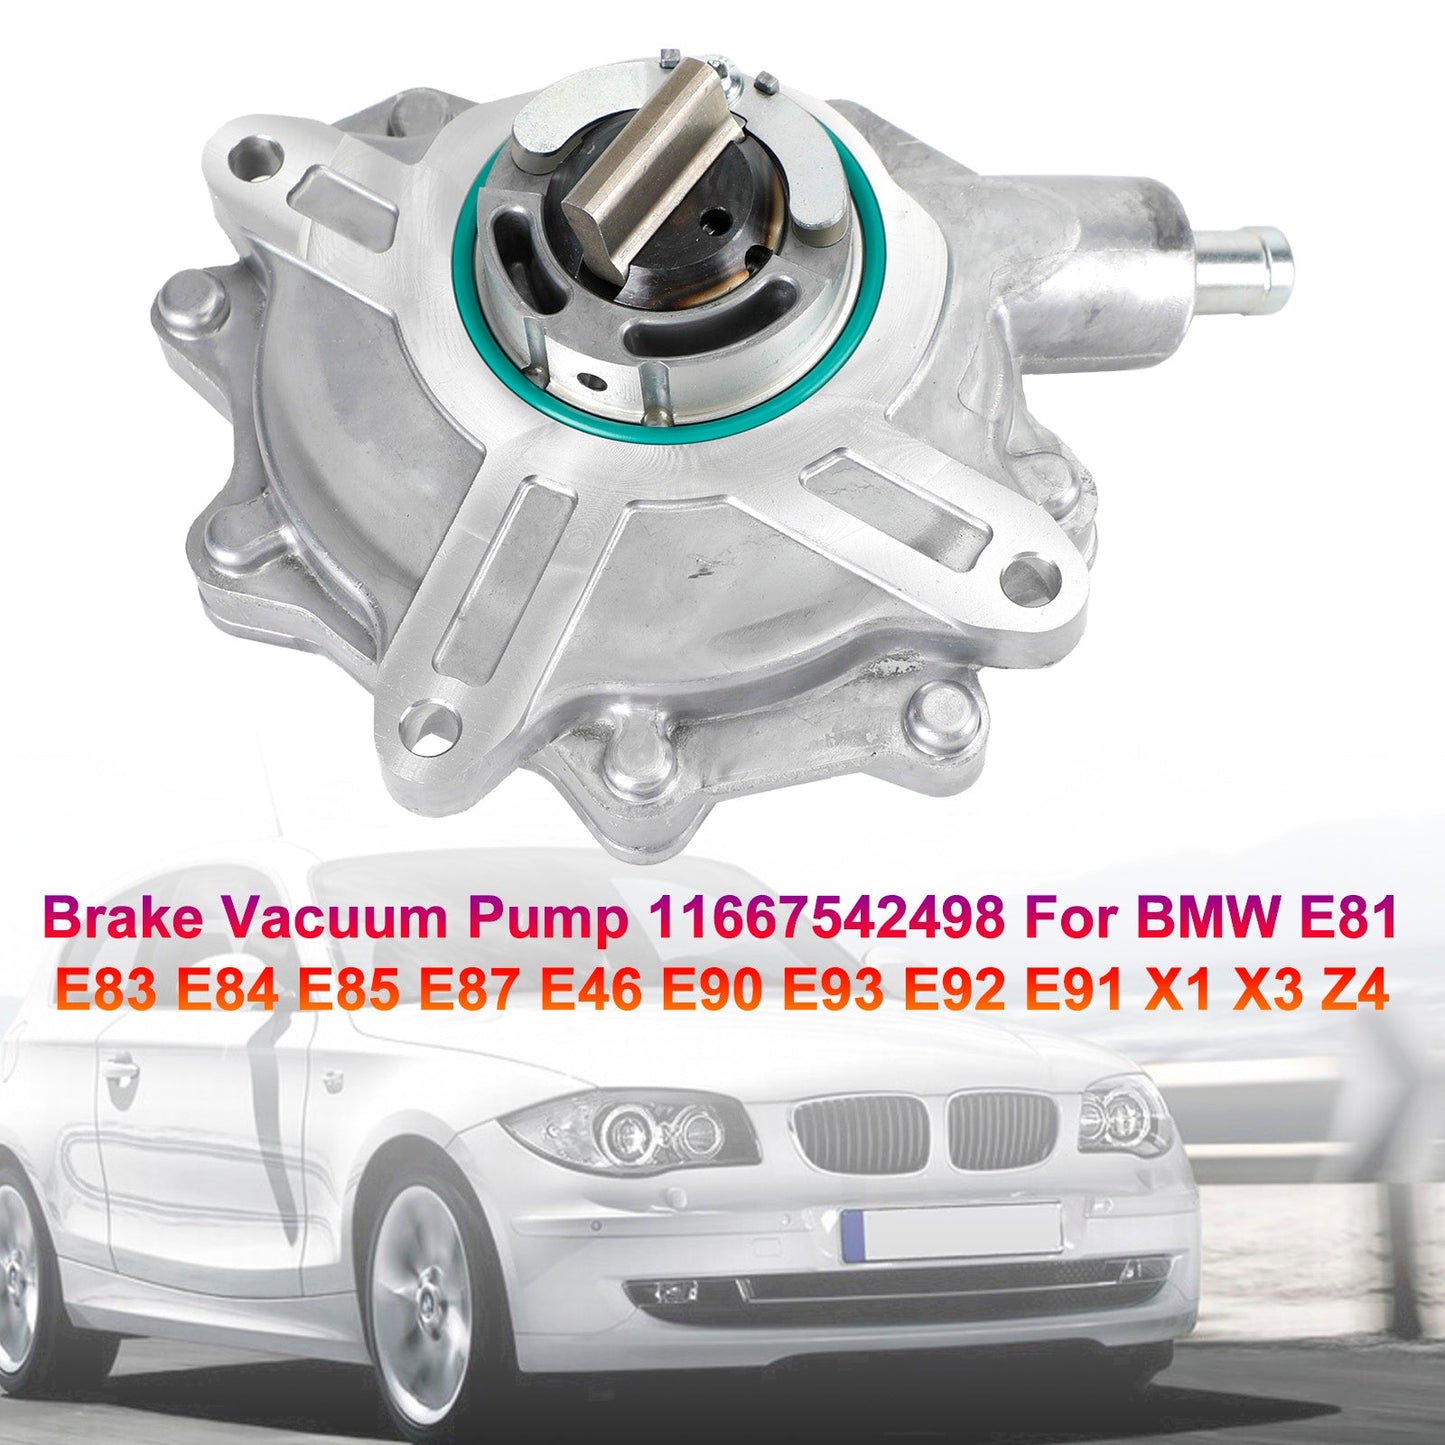 Brake Vacuum Pump 11667542498 For BMW E81 E83 E84 E85 E87 E46 E90 E93 E92 E91 11667502656 11667534236 11667635656 11668482284